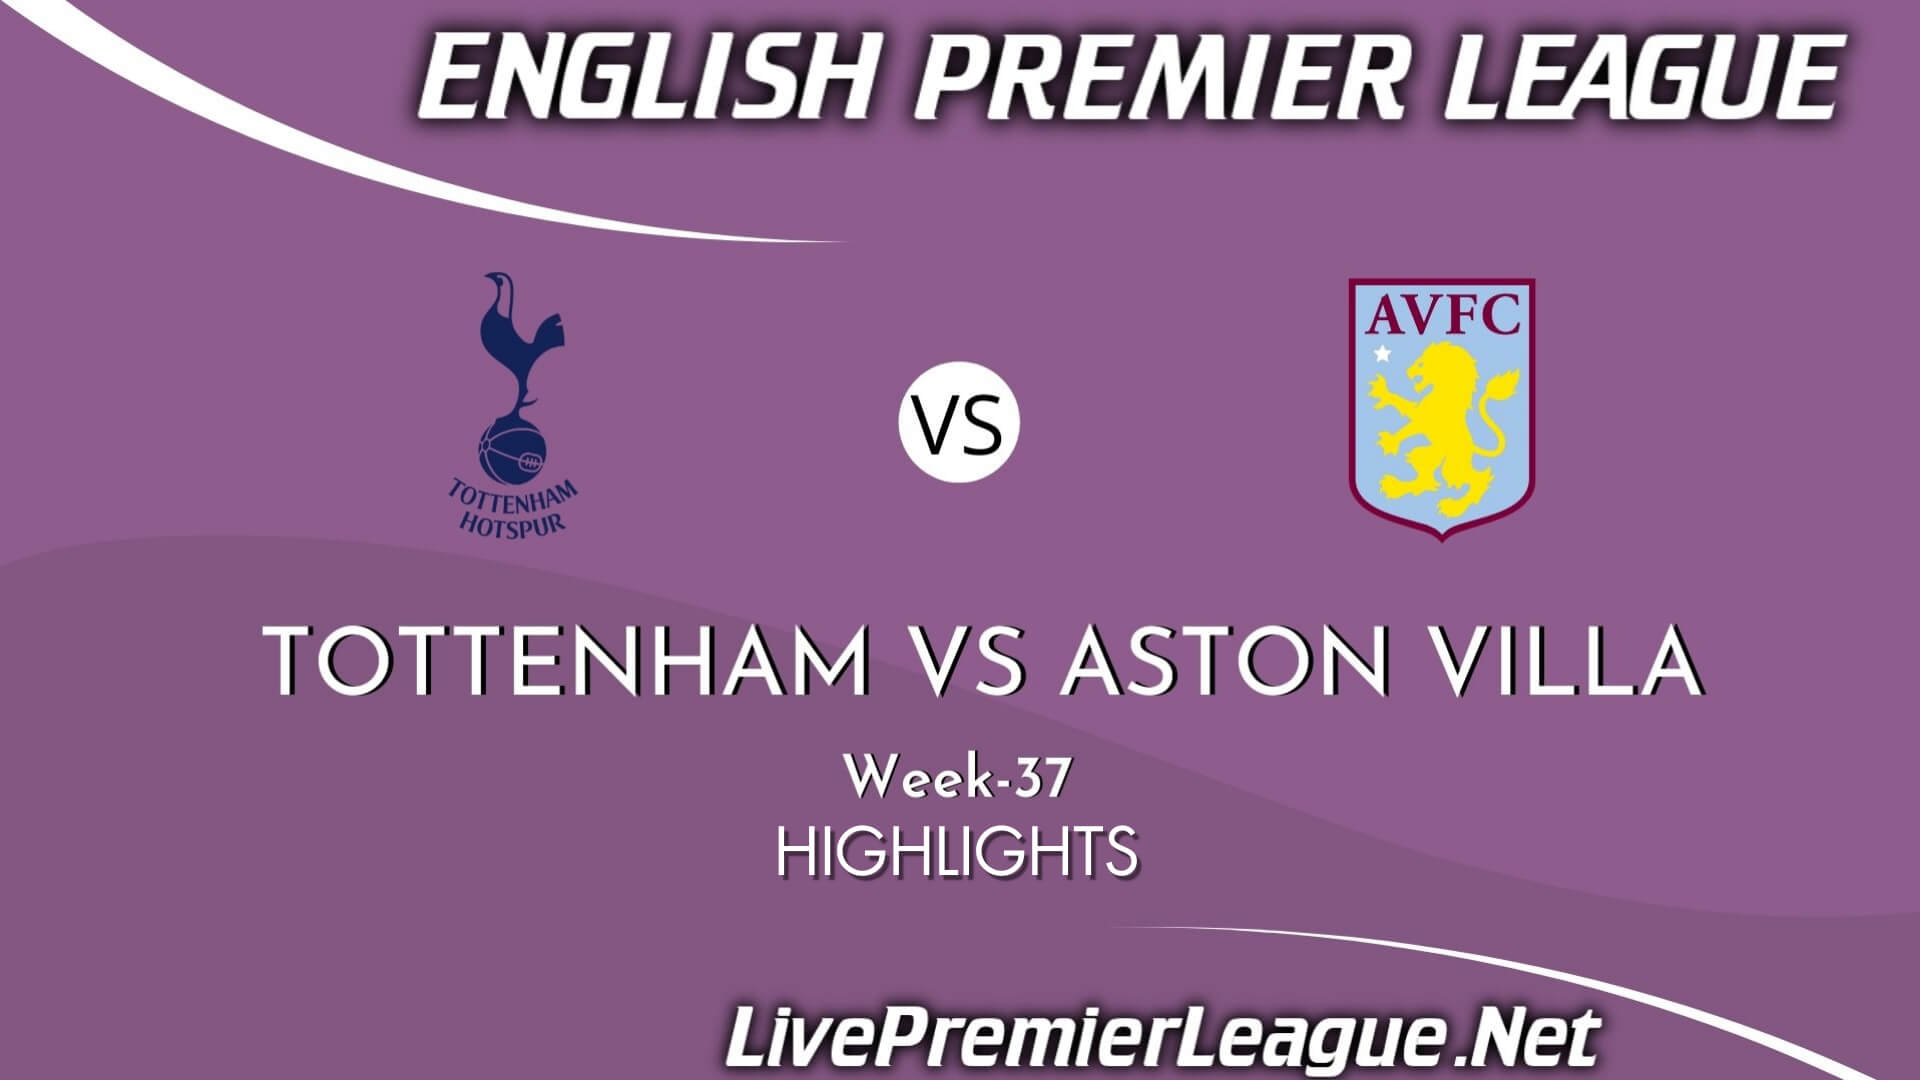 Tottenham Hotspur Vs Aston Villa Highlights 2021 Week 37